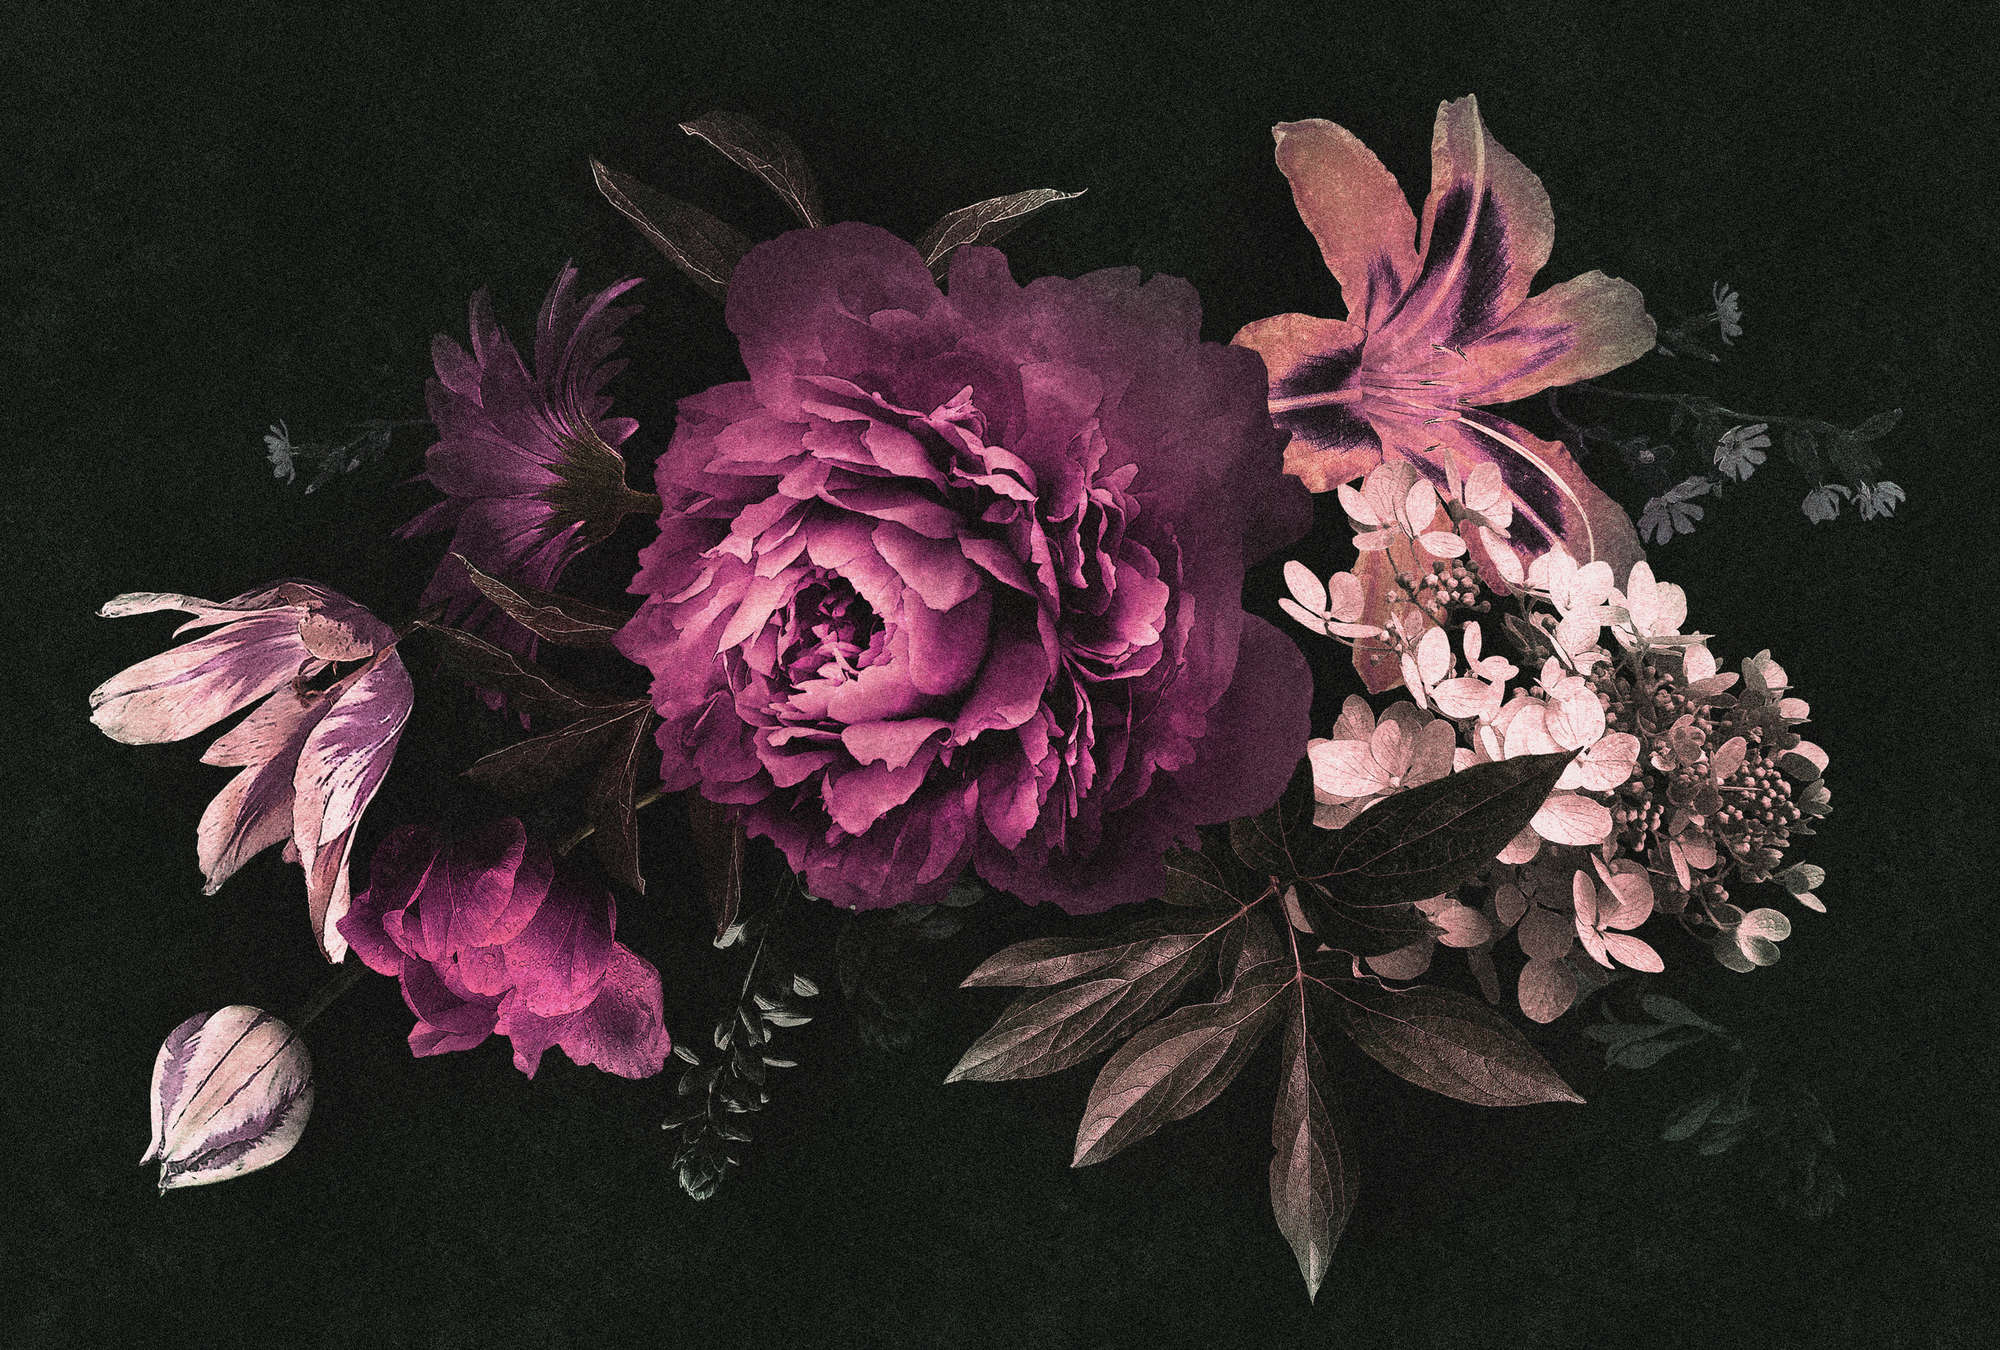             Drama queen 3 - Fotomurali romantico bouquet di fiori - struttura in cartone - Rosa, Nero | struttura in tessuto non tessuto
        